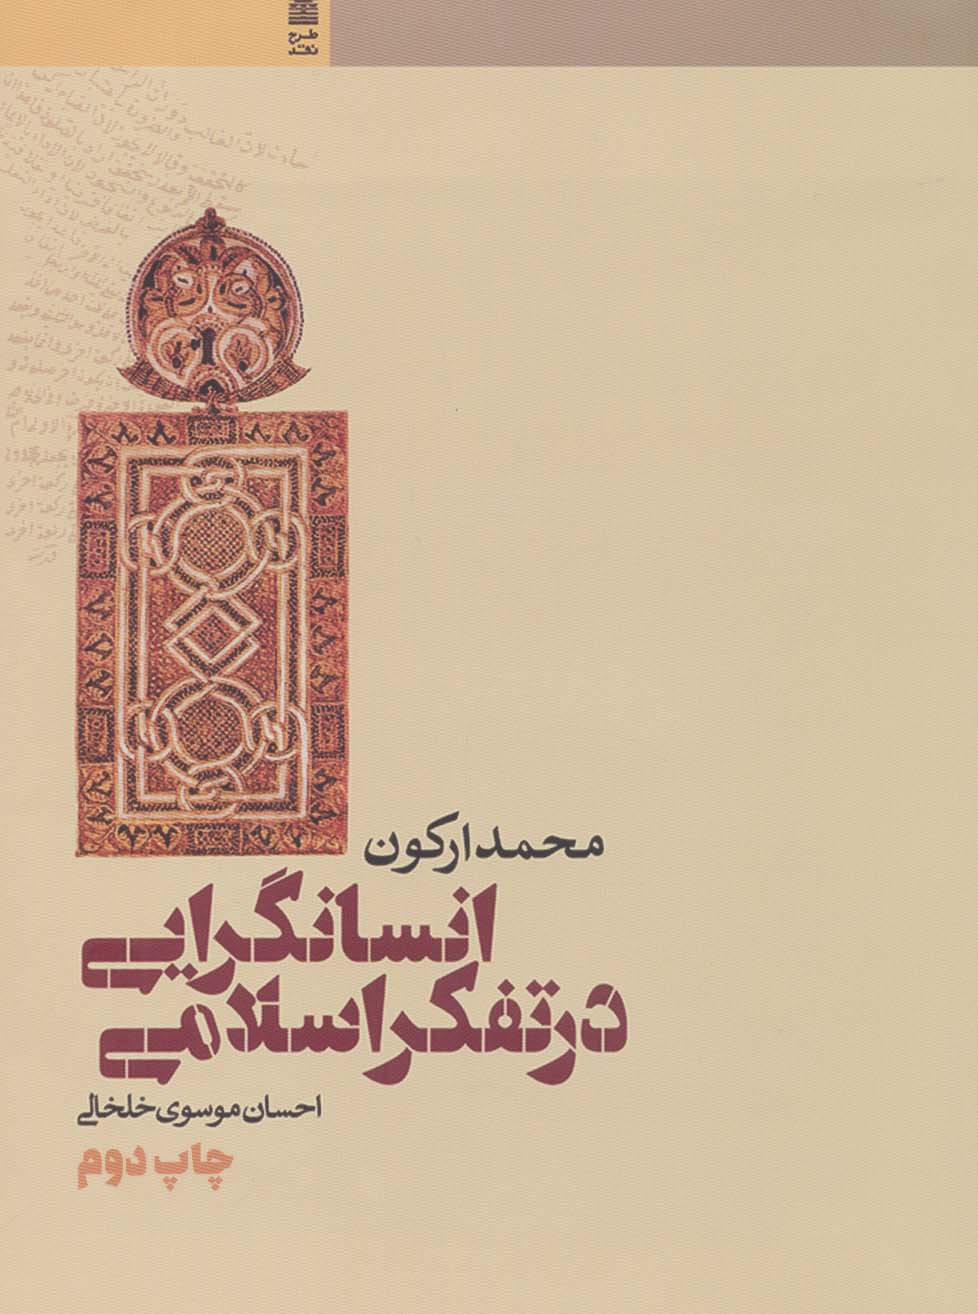 کتاب انسانگرایی در تفکر اسلامی